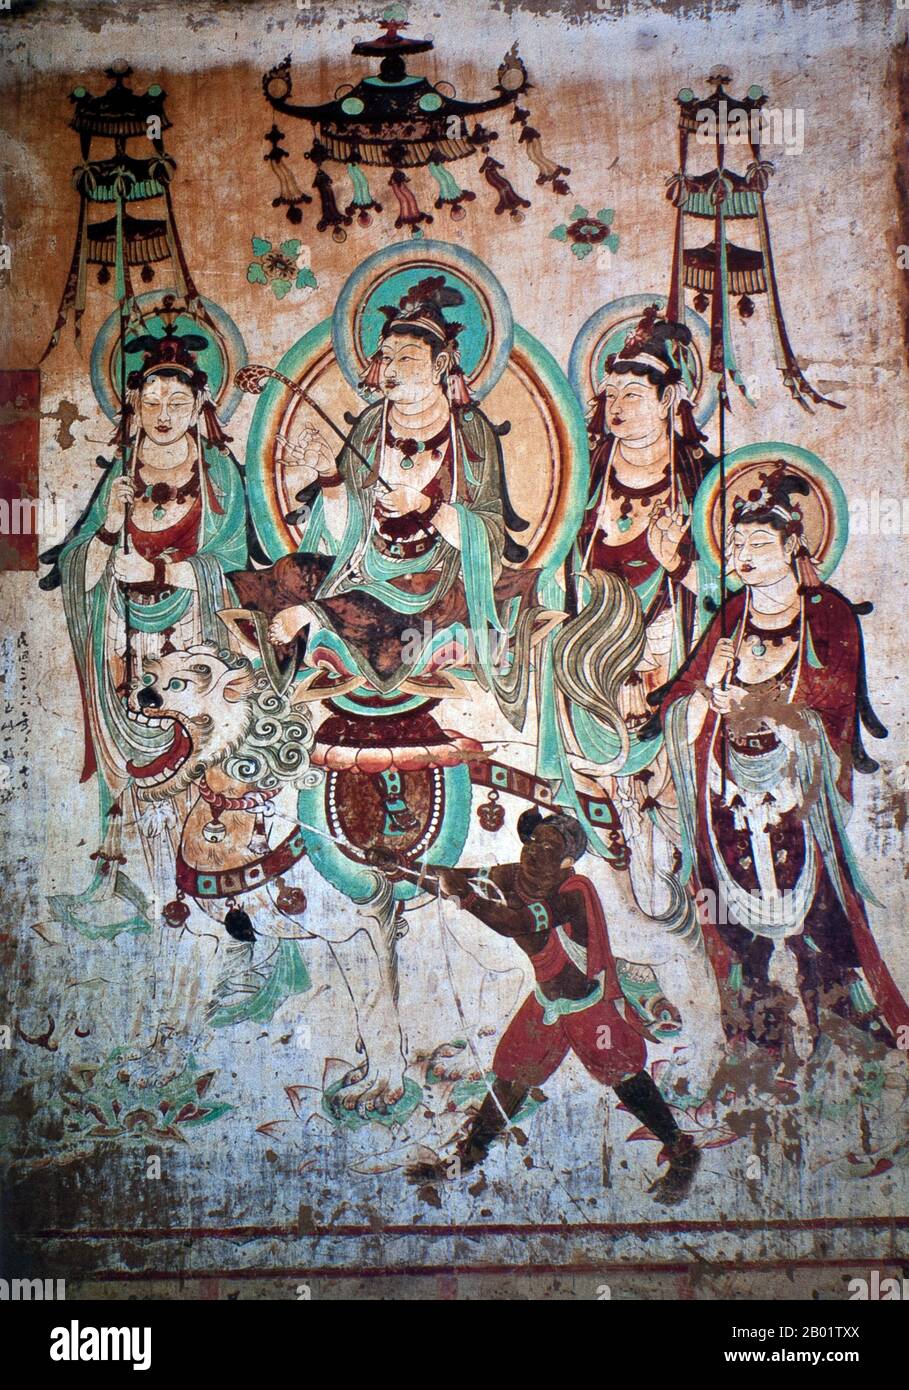 Cina: Manjusri (copia), Cave 25, Yulin Caves, Dinastia Tang (618-907). Le Grotte di Yulin sono un complesso di templi buddisti nella contea di Guazhou, provincia di Gansu, Cina. Il sito si trova a circa 100 km ad est dell'oasi cittadina di Dunhuang e delle Grotte di Mogao. Prende il nome dagli omonimi alberi di olmo che costeggiano il fiume Yulin, che scorre attraverso il sito e separa le due scogliere da cui sono state scavate le grotte. Le quarantadue grotte ospitano circa 250 statue policrome e 4.200 metri quadrati di dipinti murali, che risalgono alla dinastia Tang alla dinastia Yuan (dal VII al XIV secolo). Foto Stock